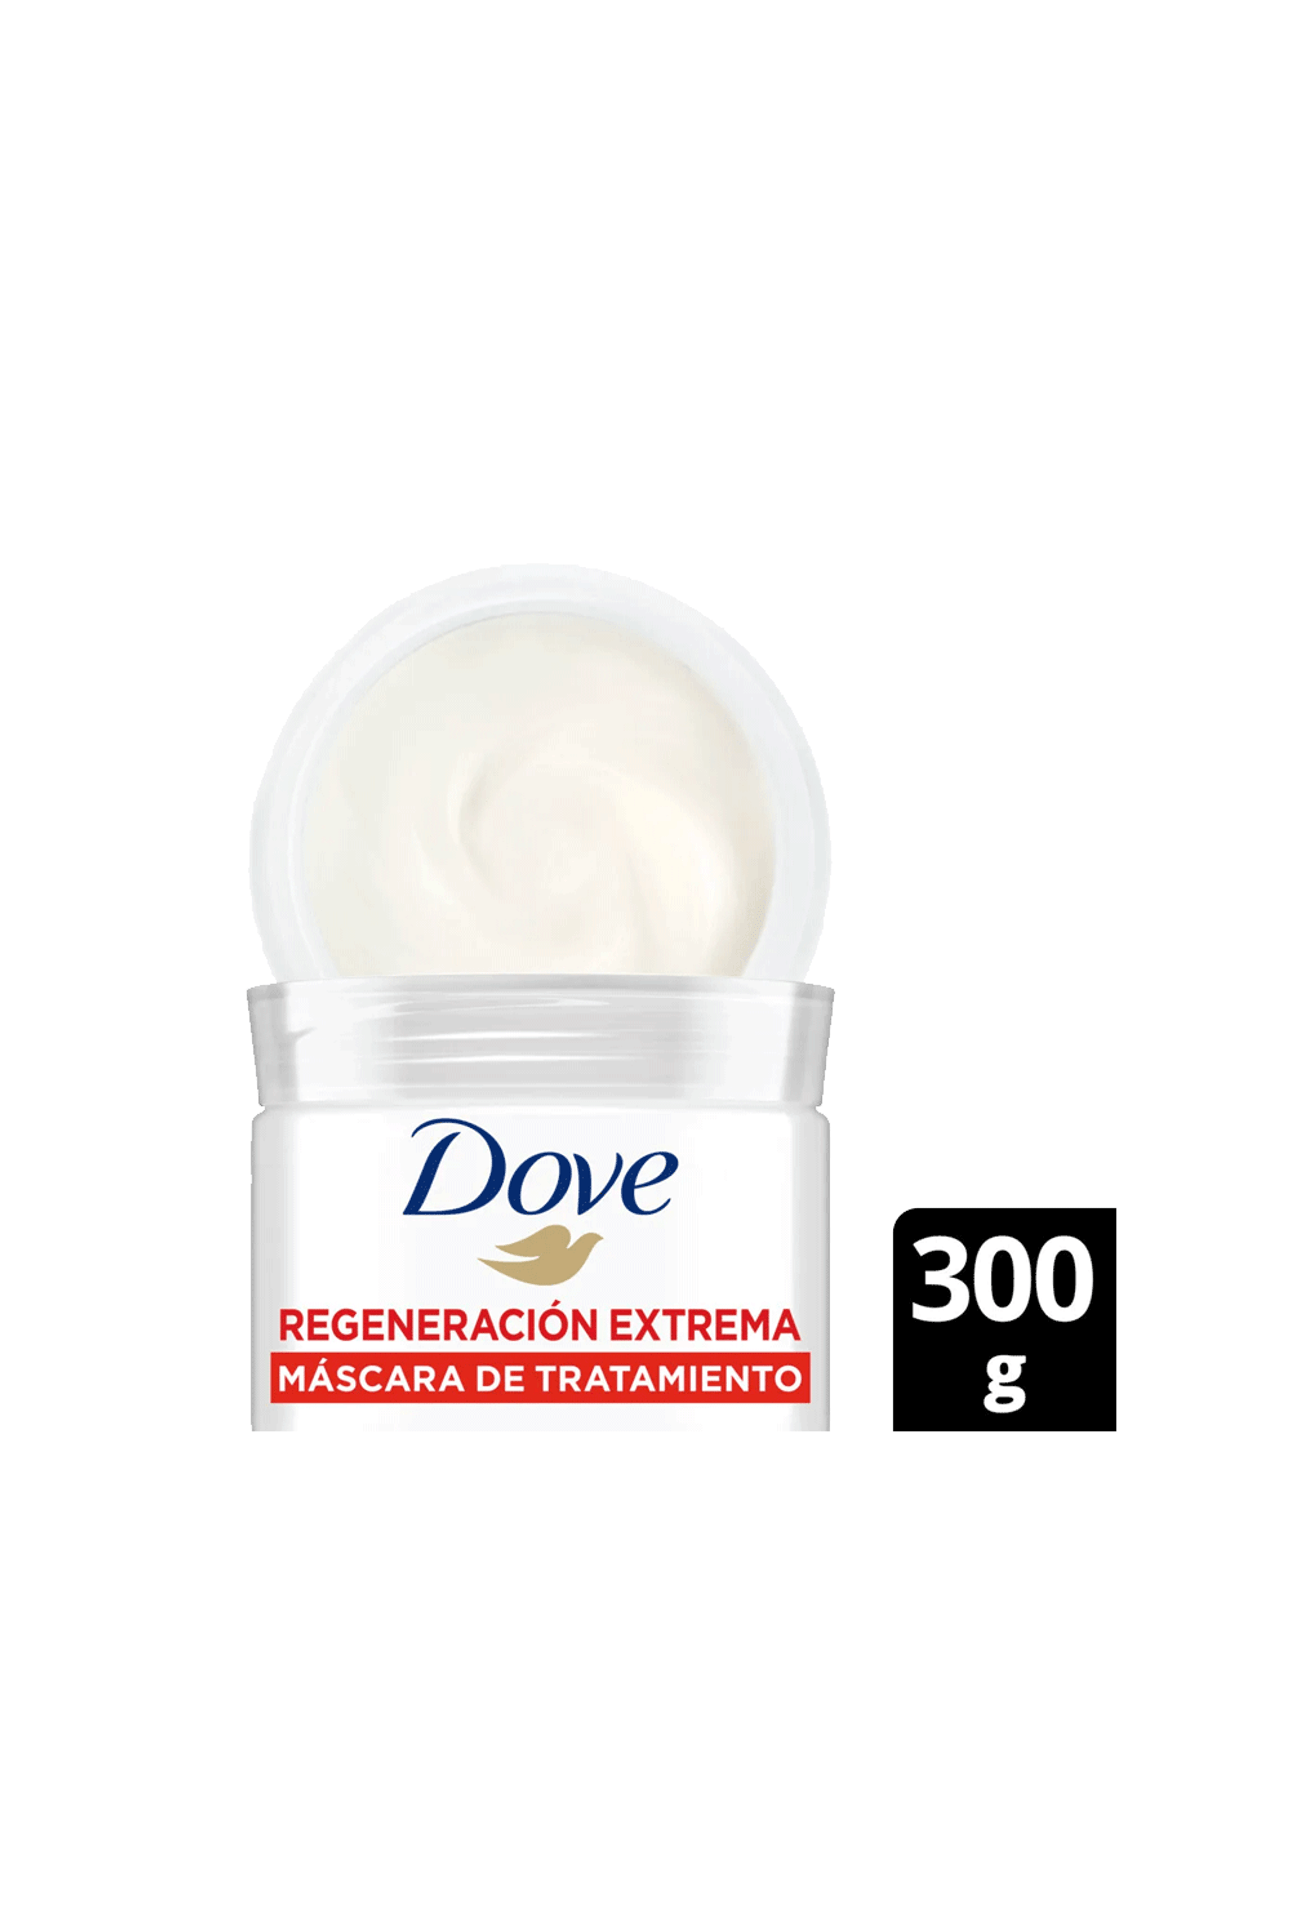 Mascara-de-Tratamiento-Dove-Regeneracion-Extrema-x-300-gr-Dove